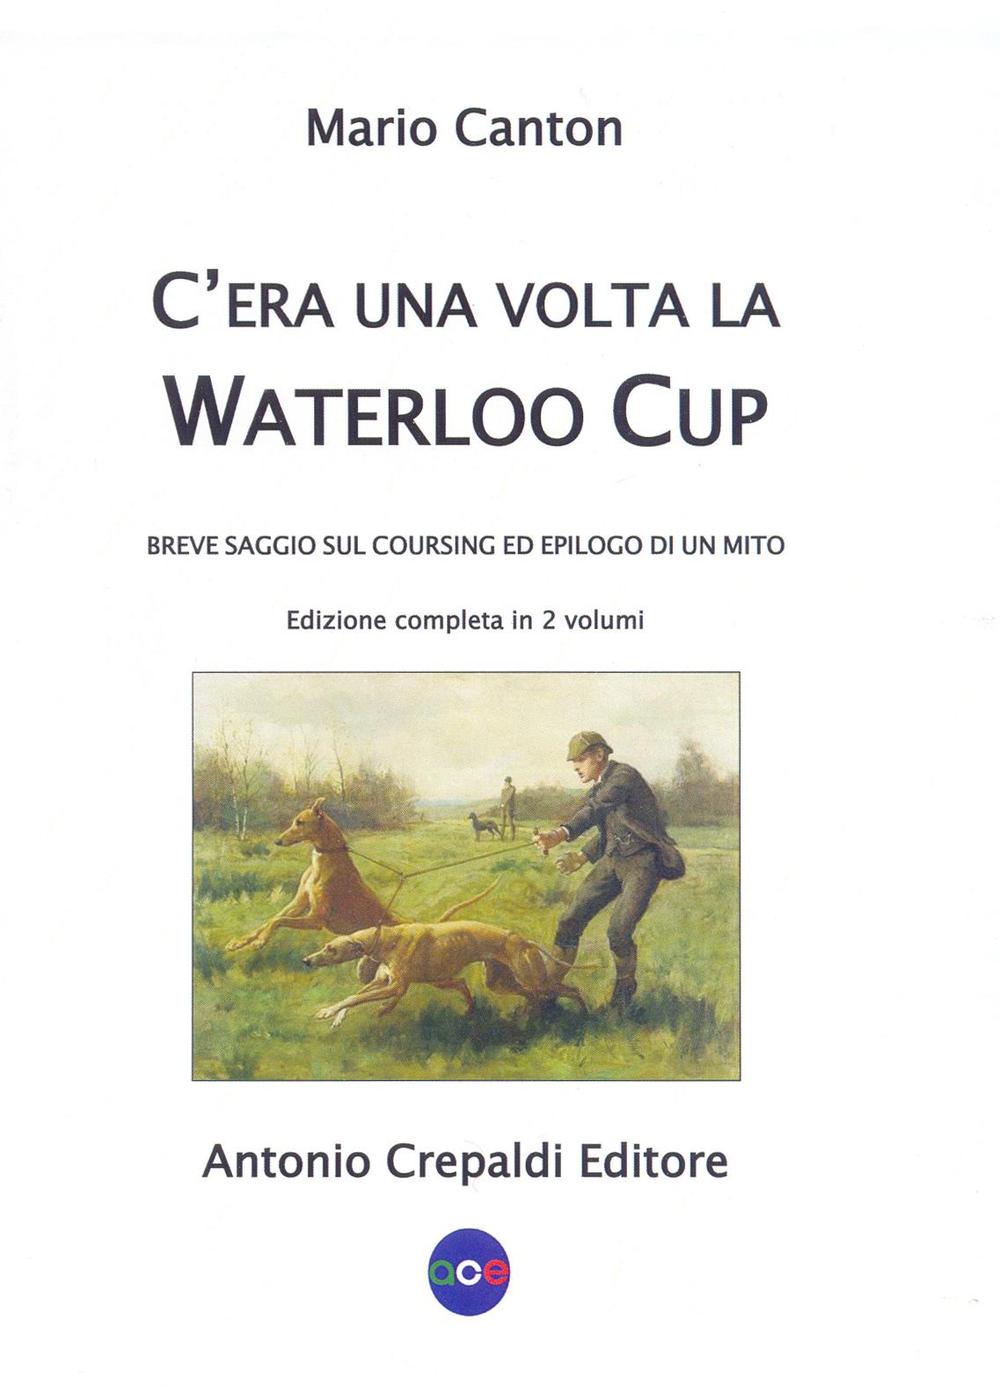 Libri Mario Canton - C'era Una Volta La Waterloo Cup. Breve Saggio Sul Coursing Ed Epilogo Di Un Mito NUOVO SIGILLATO, EDIZIONE DEL 19/05/2016 SUBITO DISPONIBILE